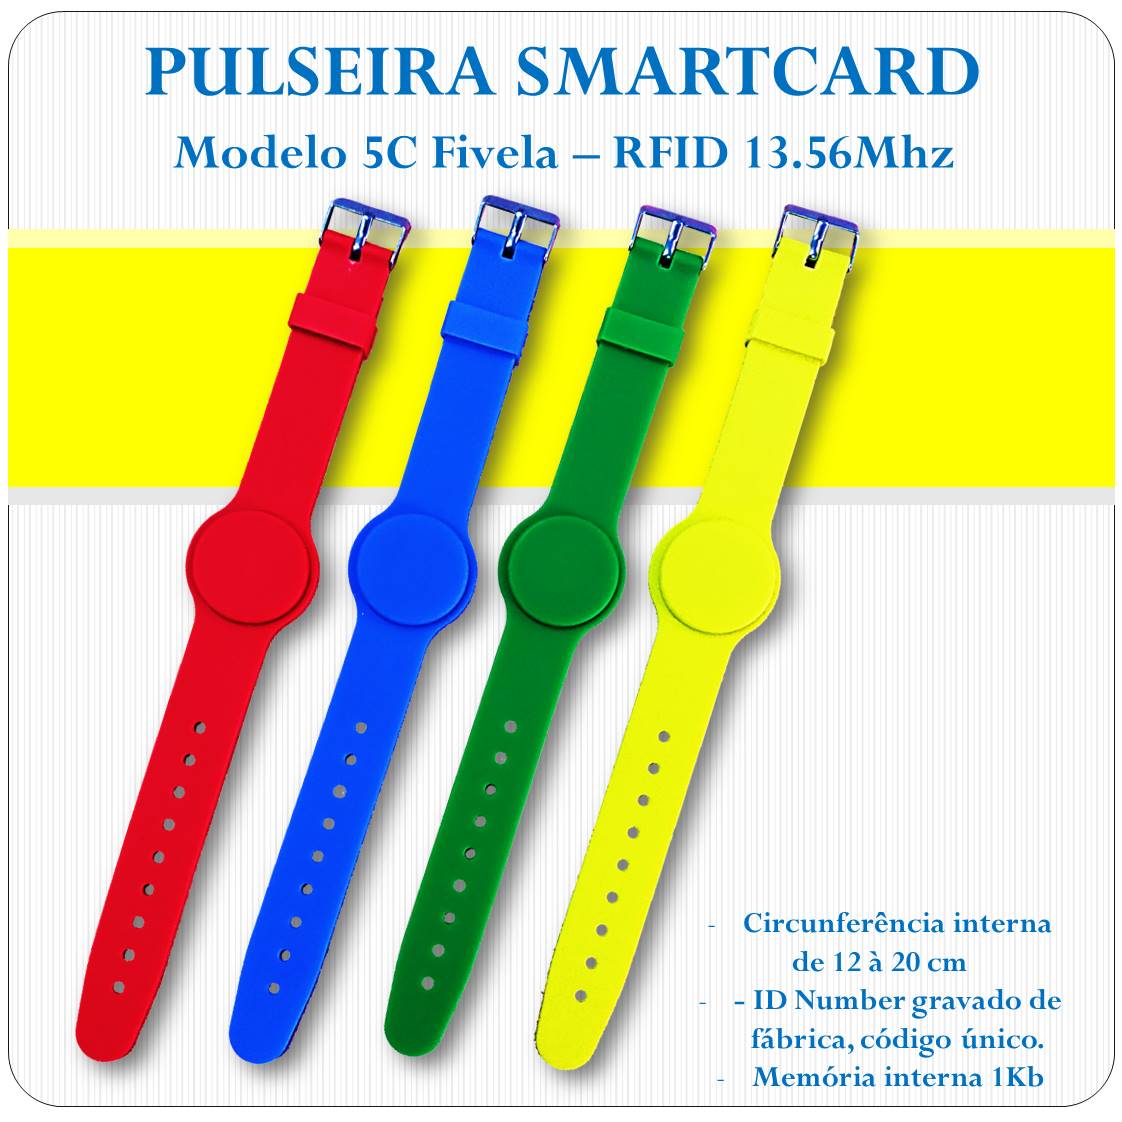 Pulseira RFID Smart Card 13.56 Mhz com Fivela 5C